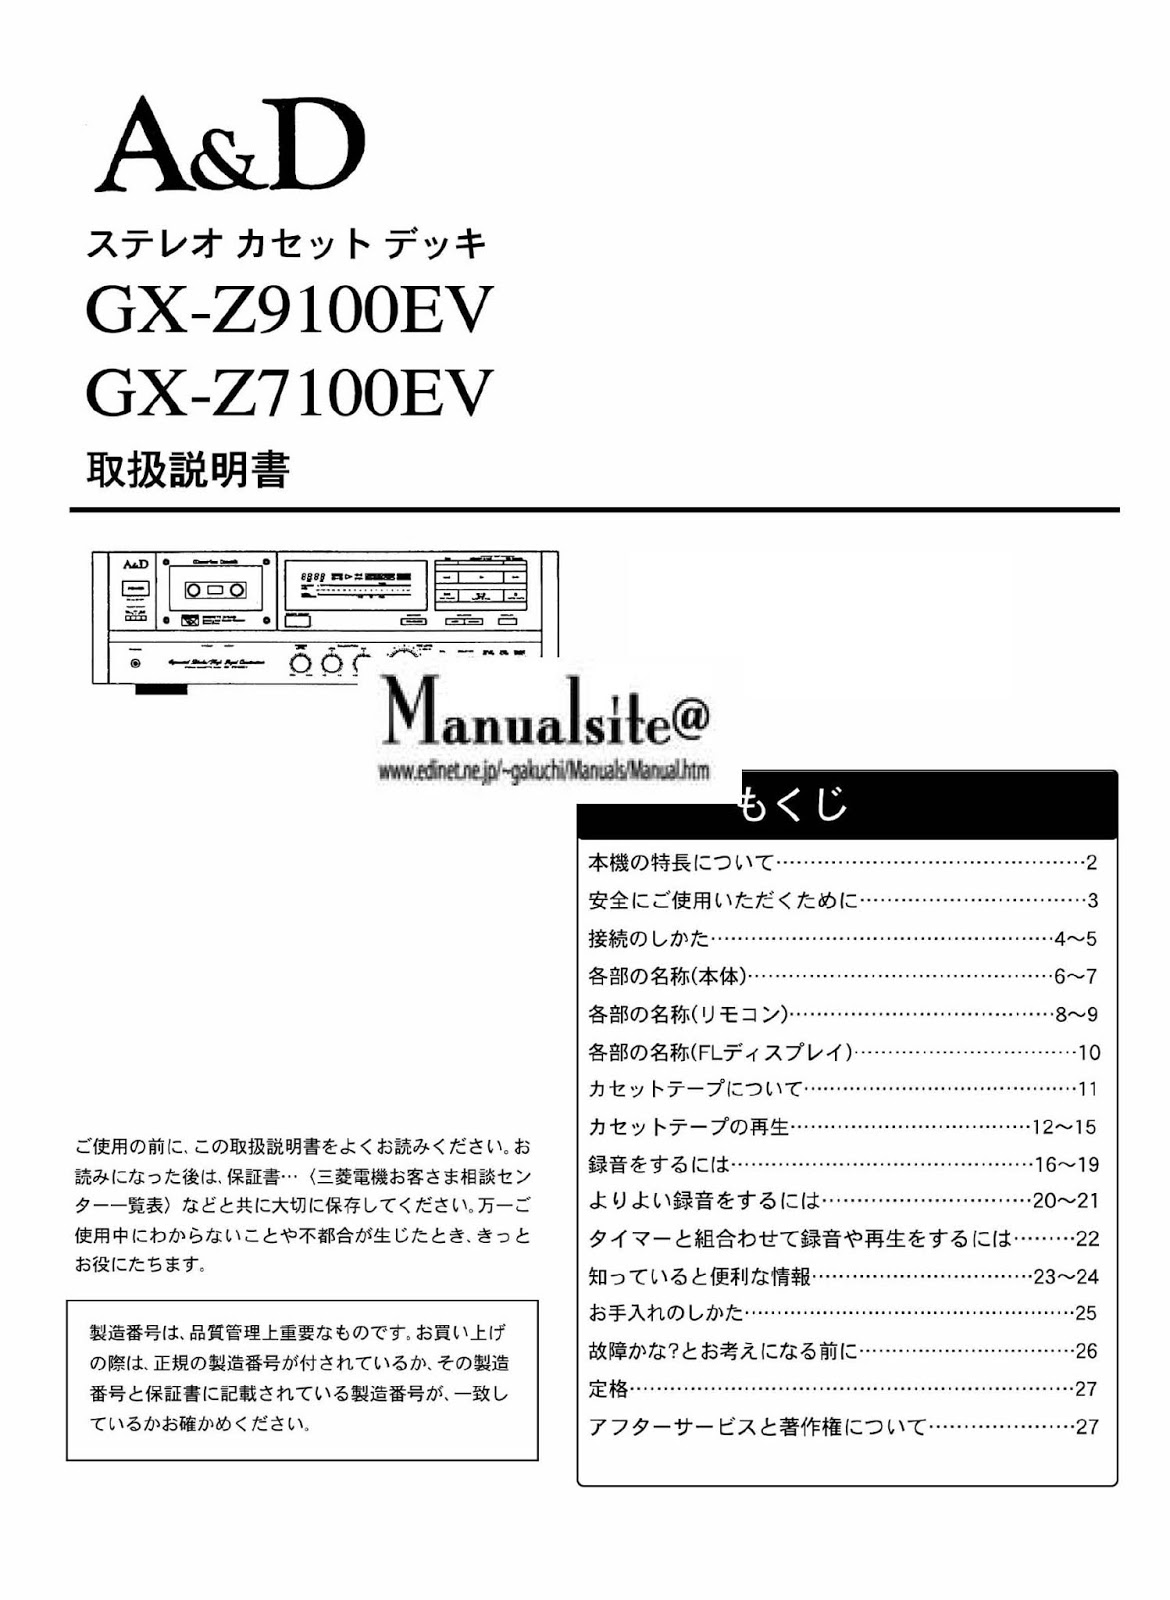 マニュアルサイト詳細館1号館: GX-Z7100/9100EV